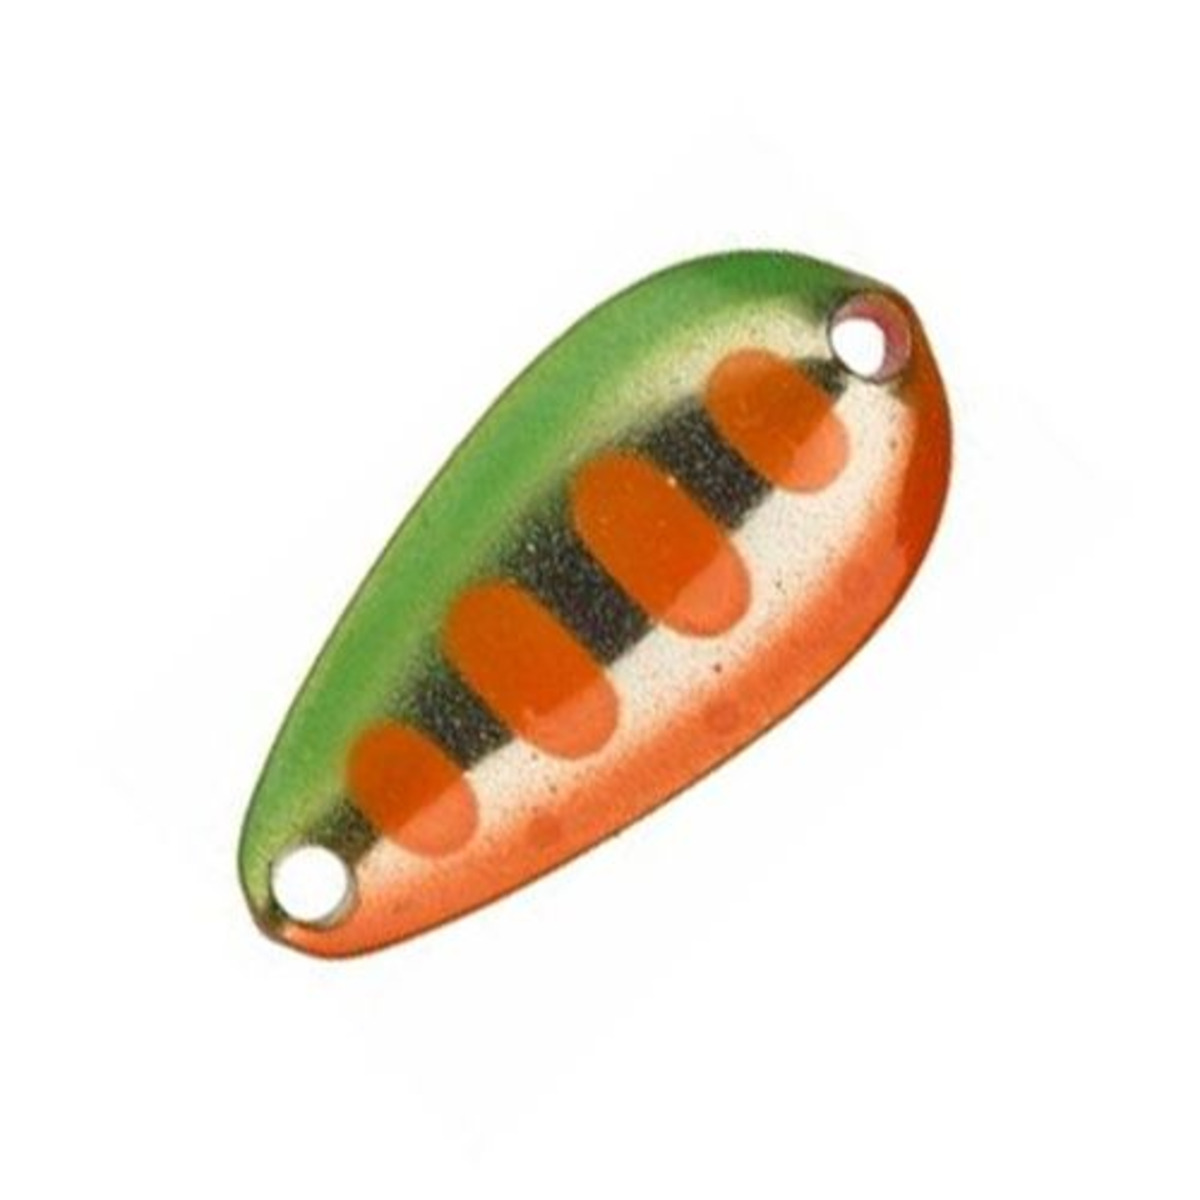 Illex Tearo 1.6 G - 1.6 g - 22 mm - Green Orange Yamame-Fluo Pink